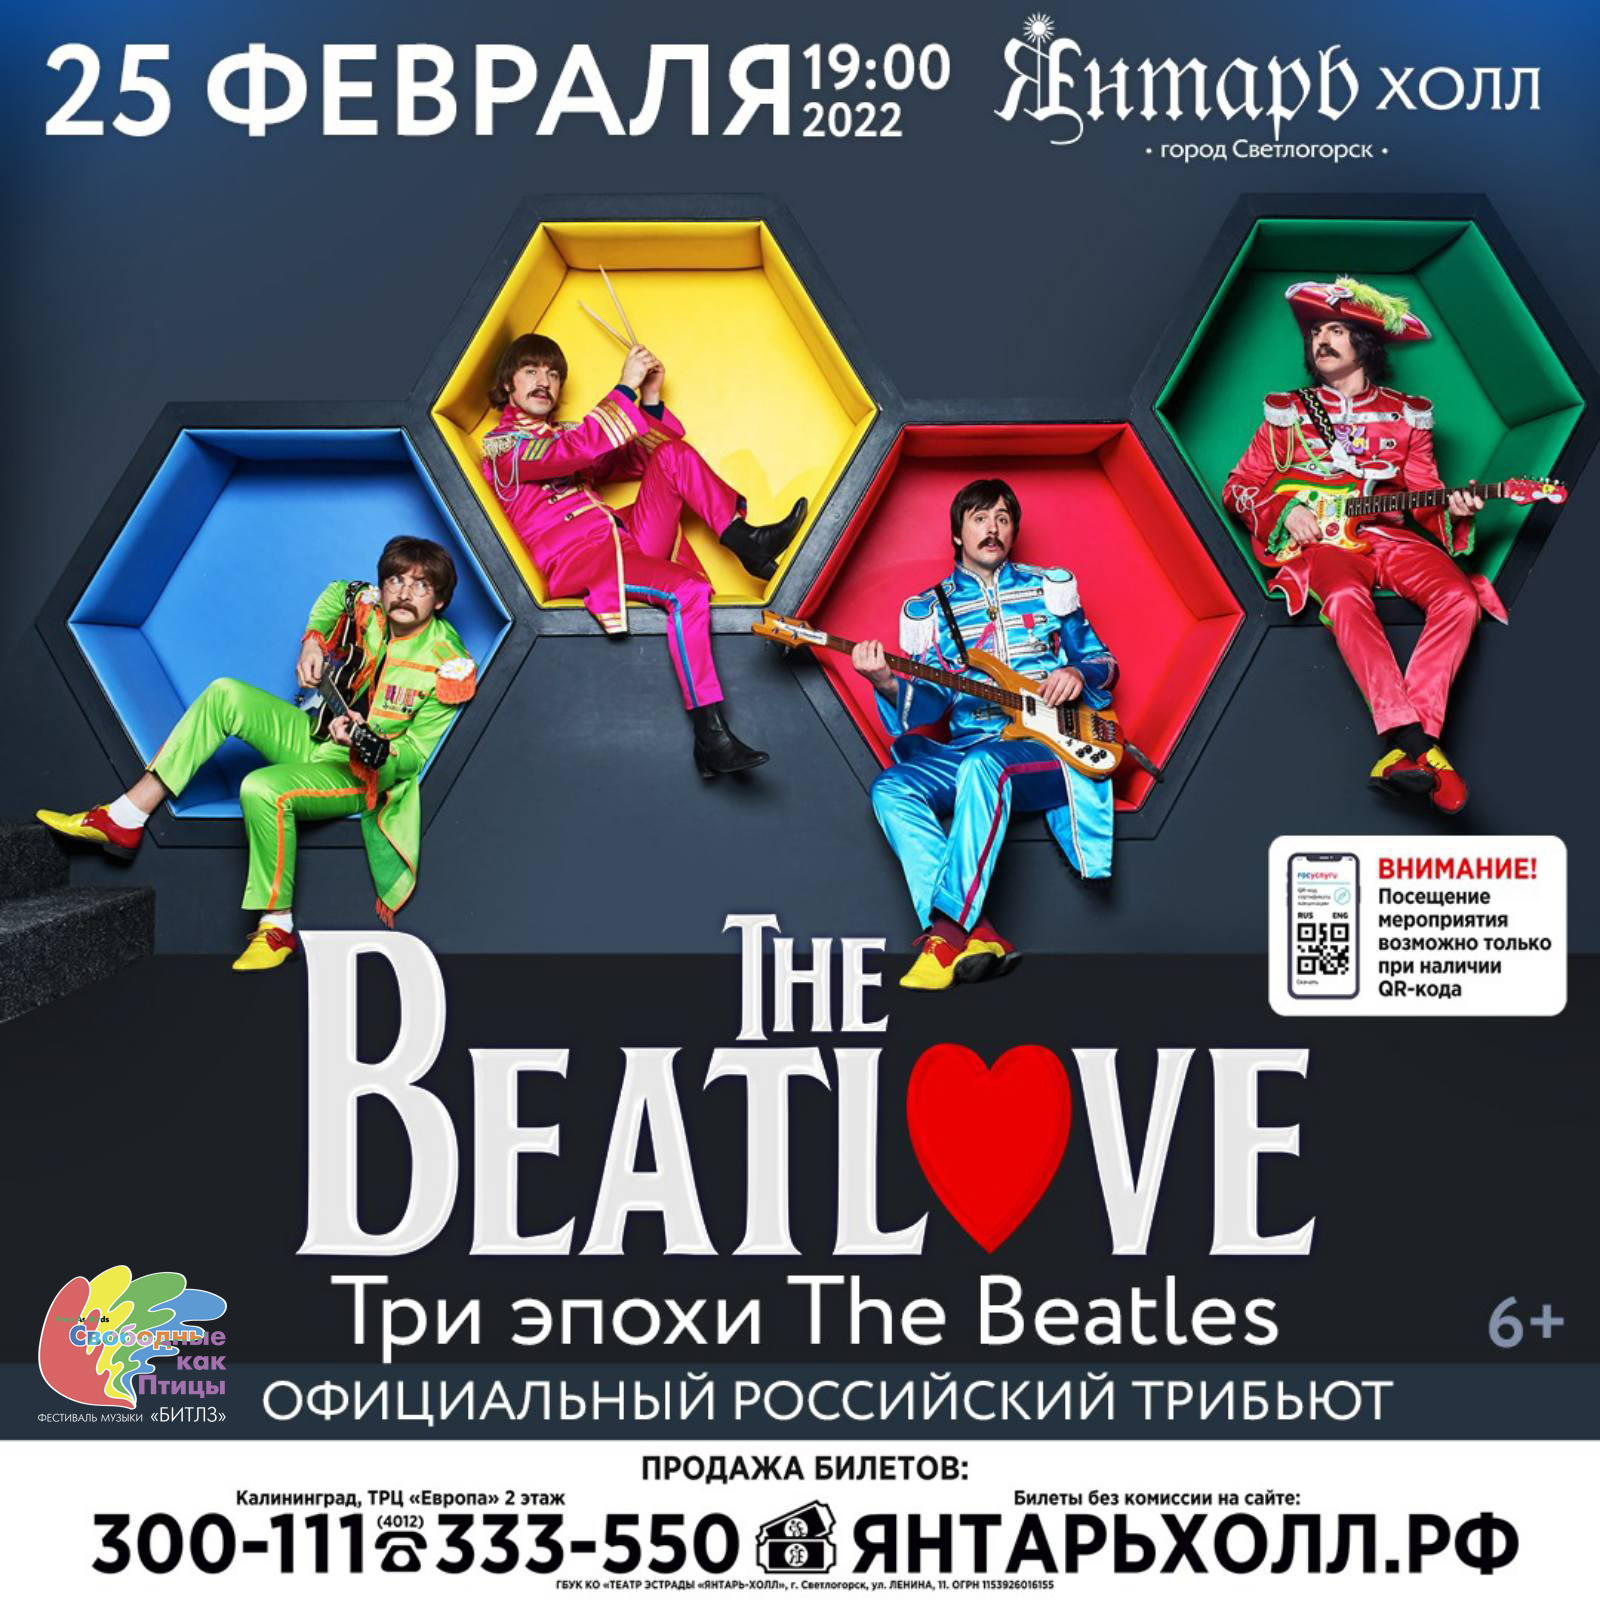 Трибьют-шоу-группа The BeatLove в «Янтарь-холле» 25 февраля в 19-00